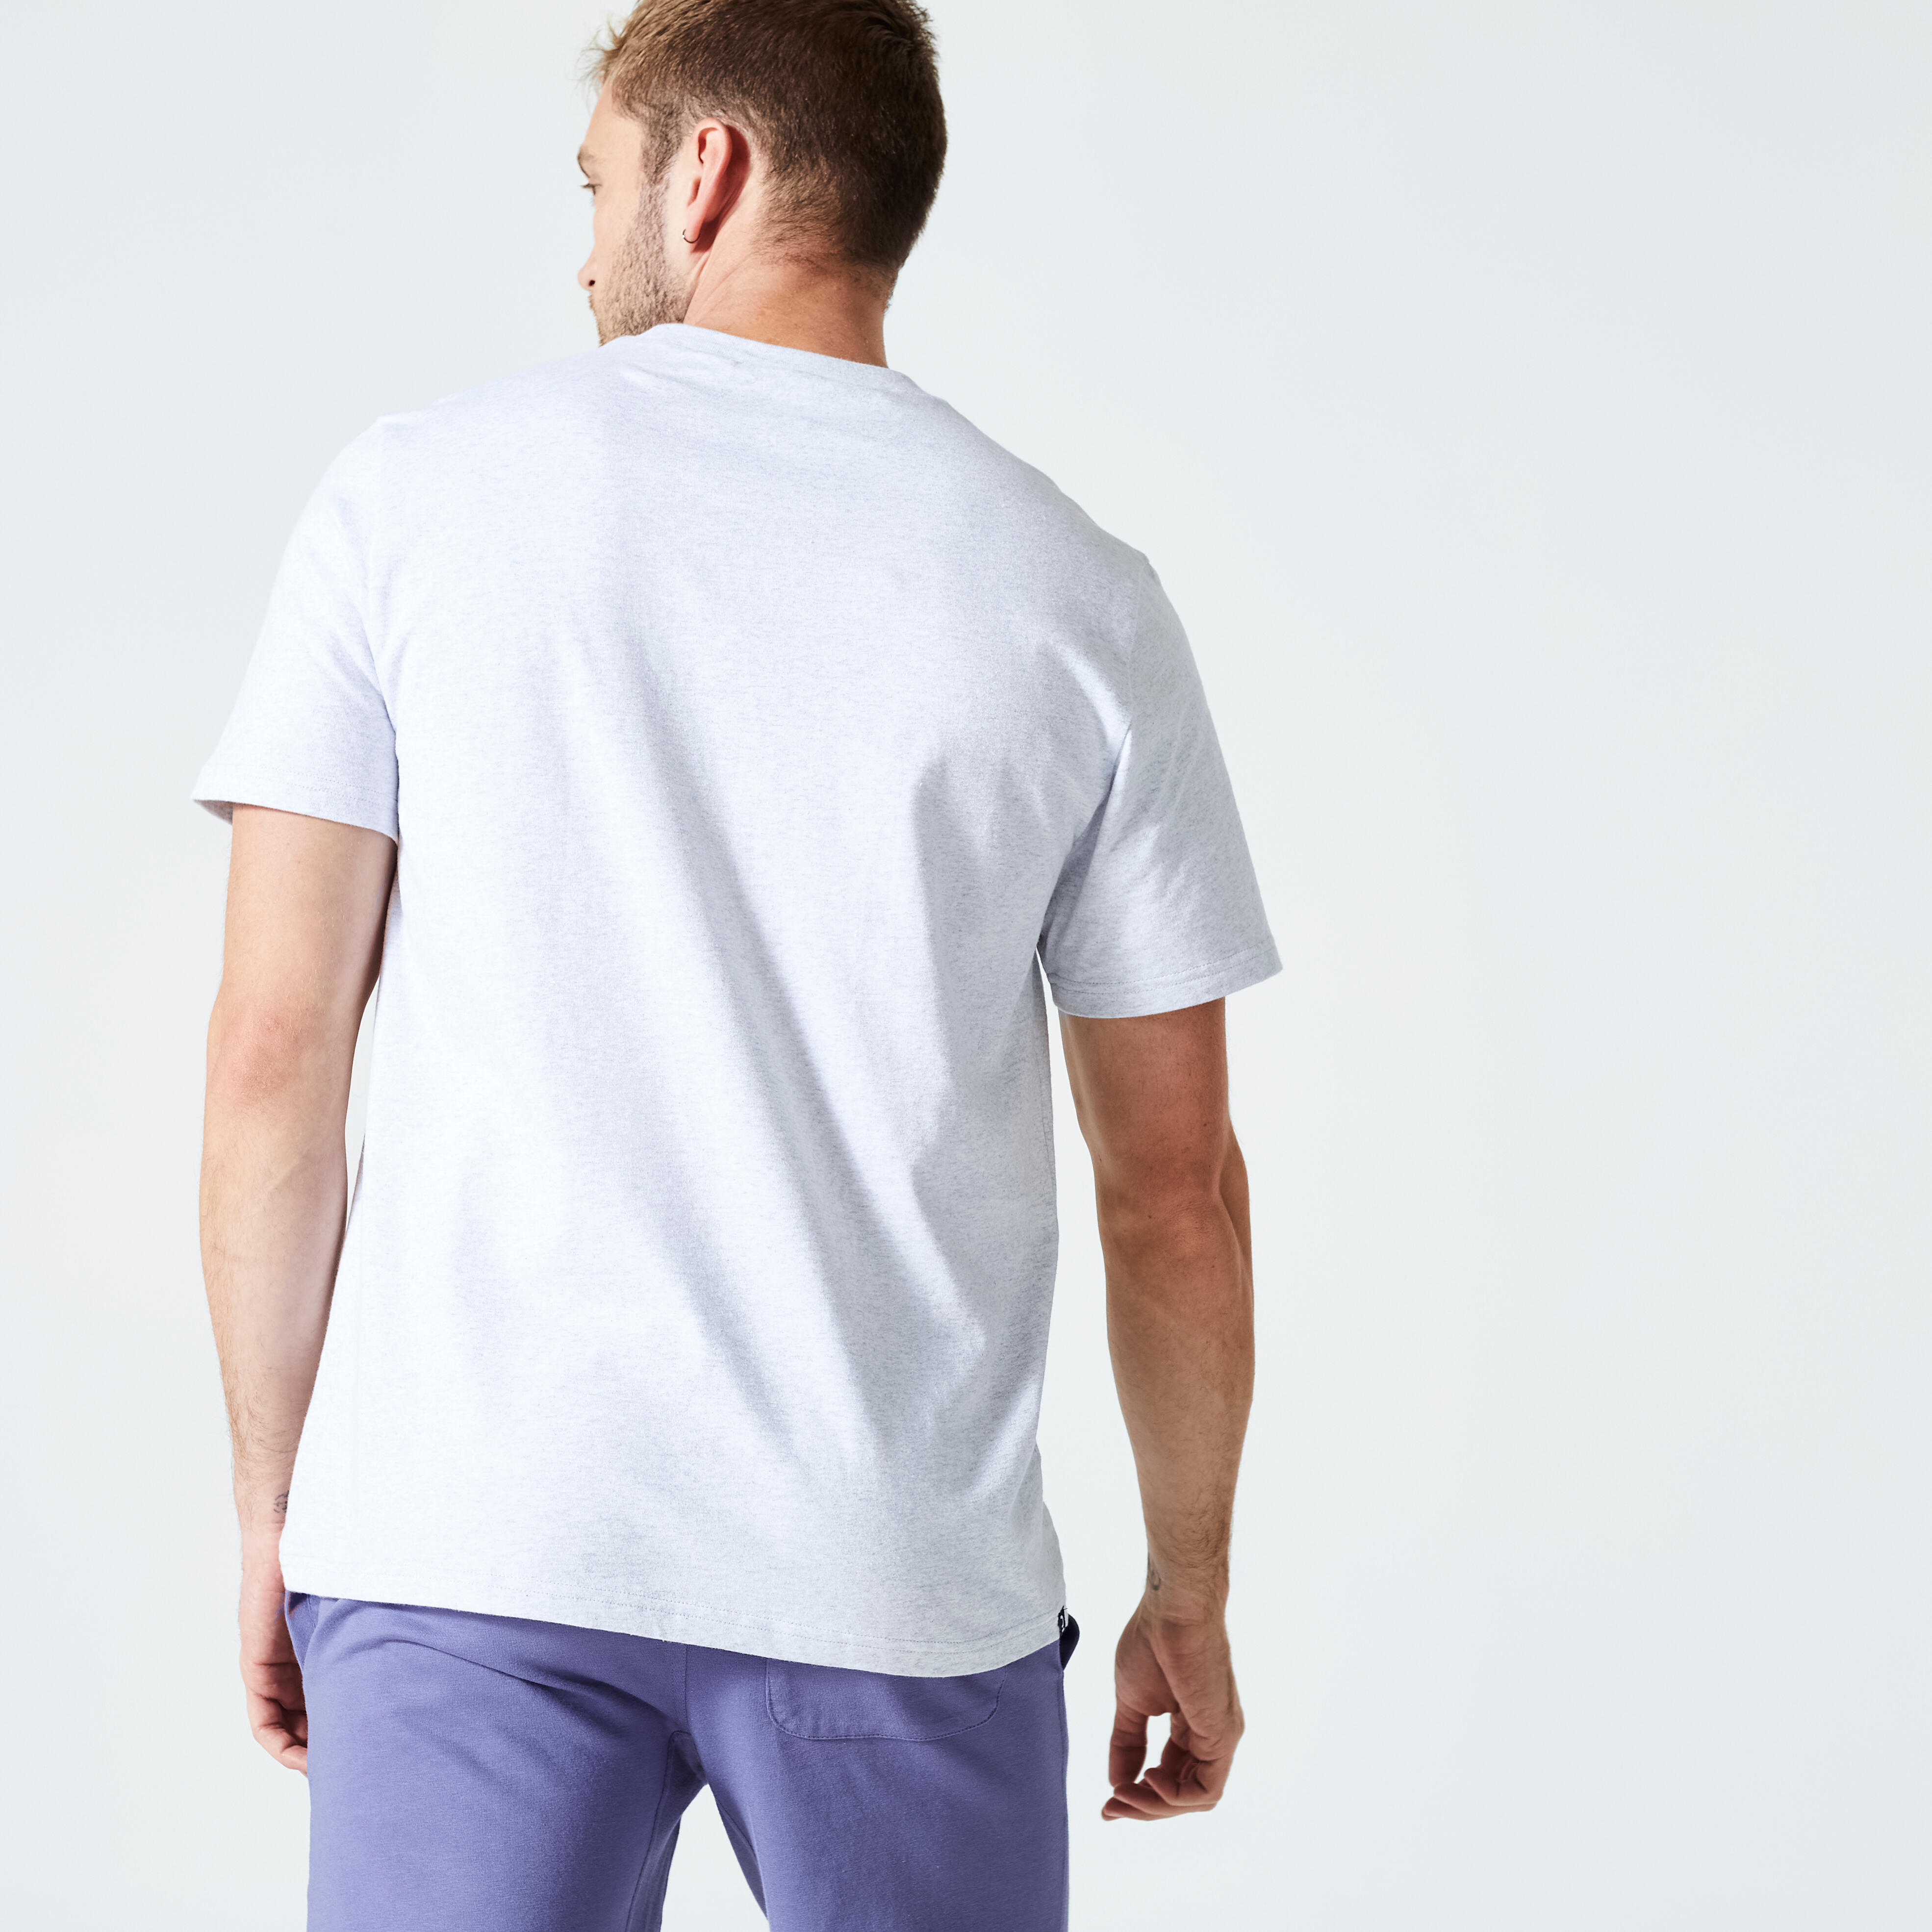 Men’s Fitness T-Shirt - Essentials 500 Grey